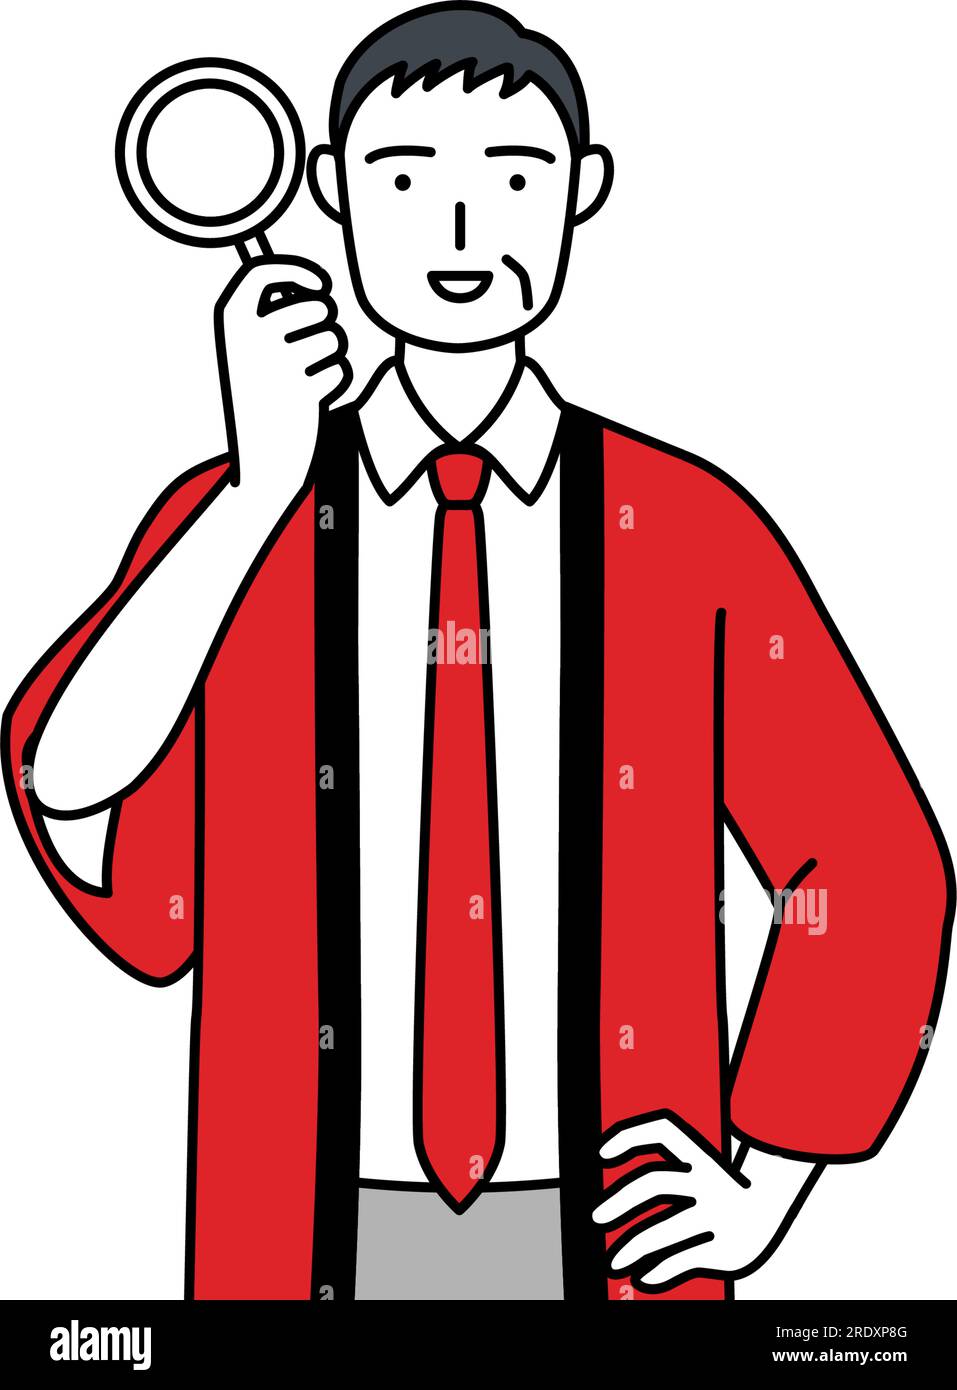 Ein älterer Mann in einem roten Happi-Mantel, der durch eine Lupe schaut, Vektor-Illustration Stock Vektor